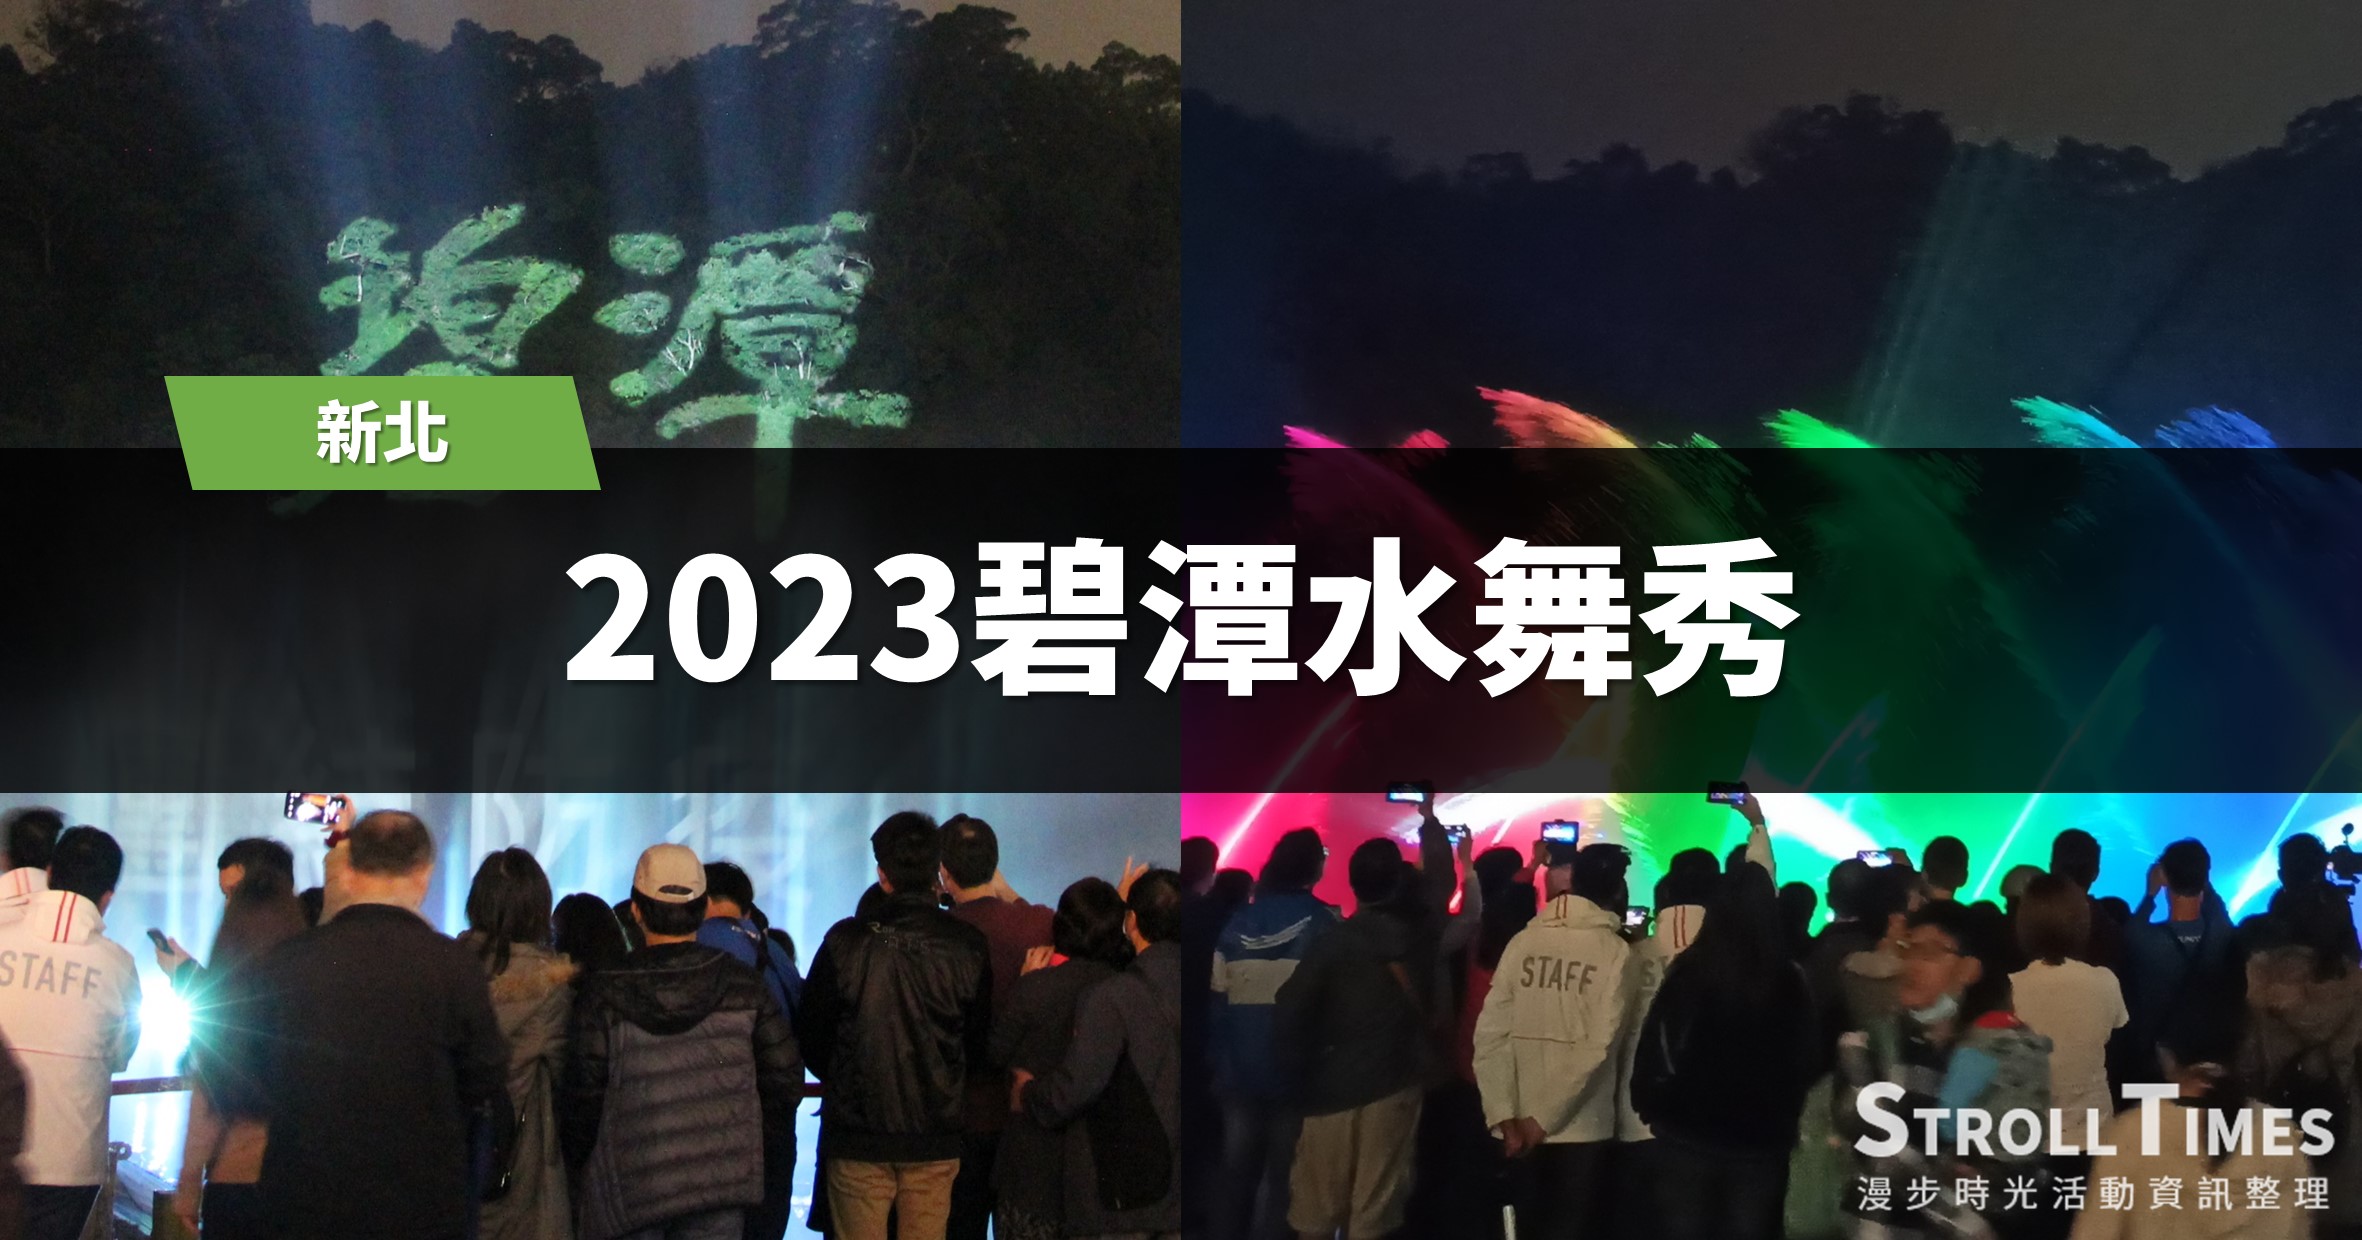 2023碧潭水舞秀：10個主題系列活動、9個景點推薦、7個行程規劃